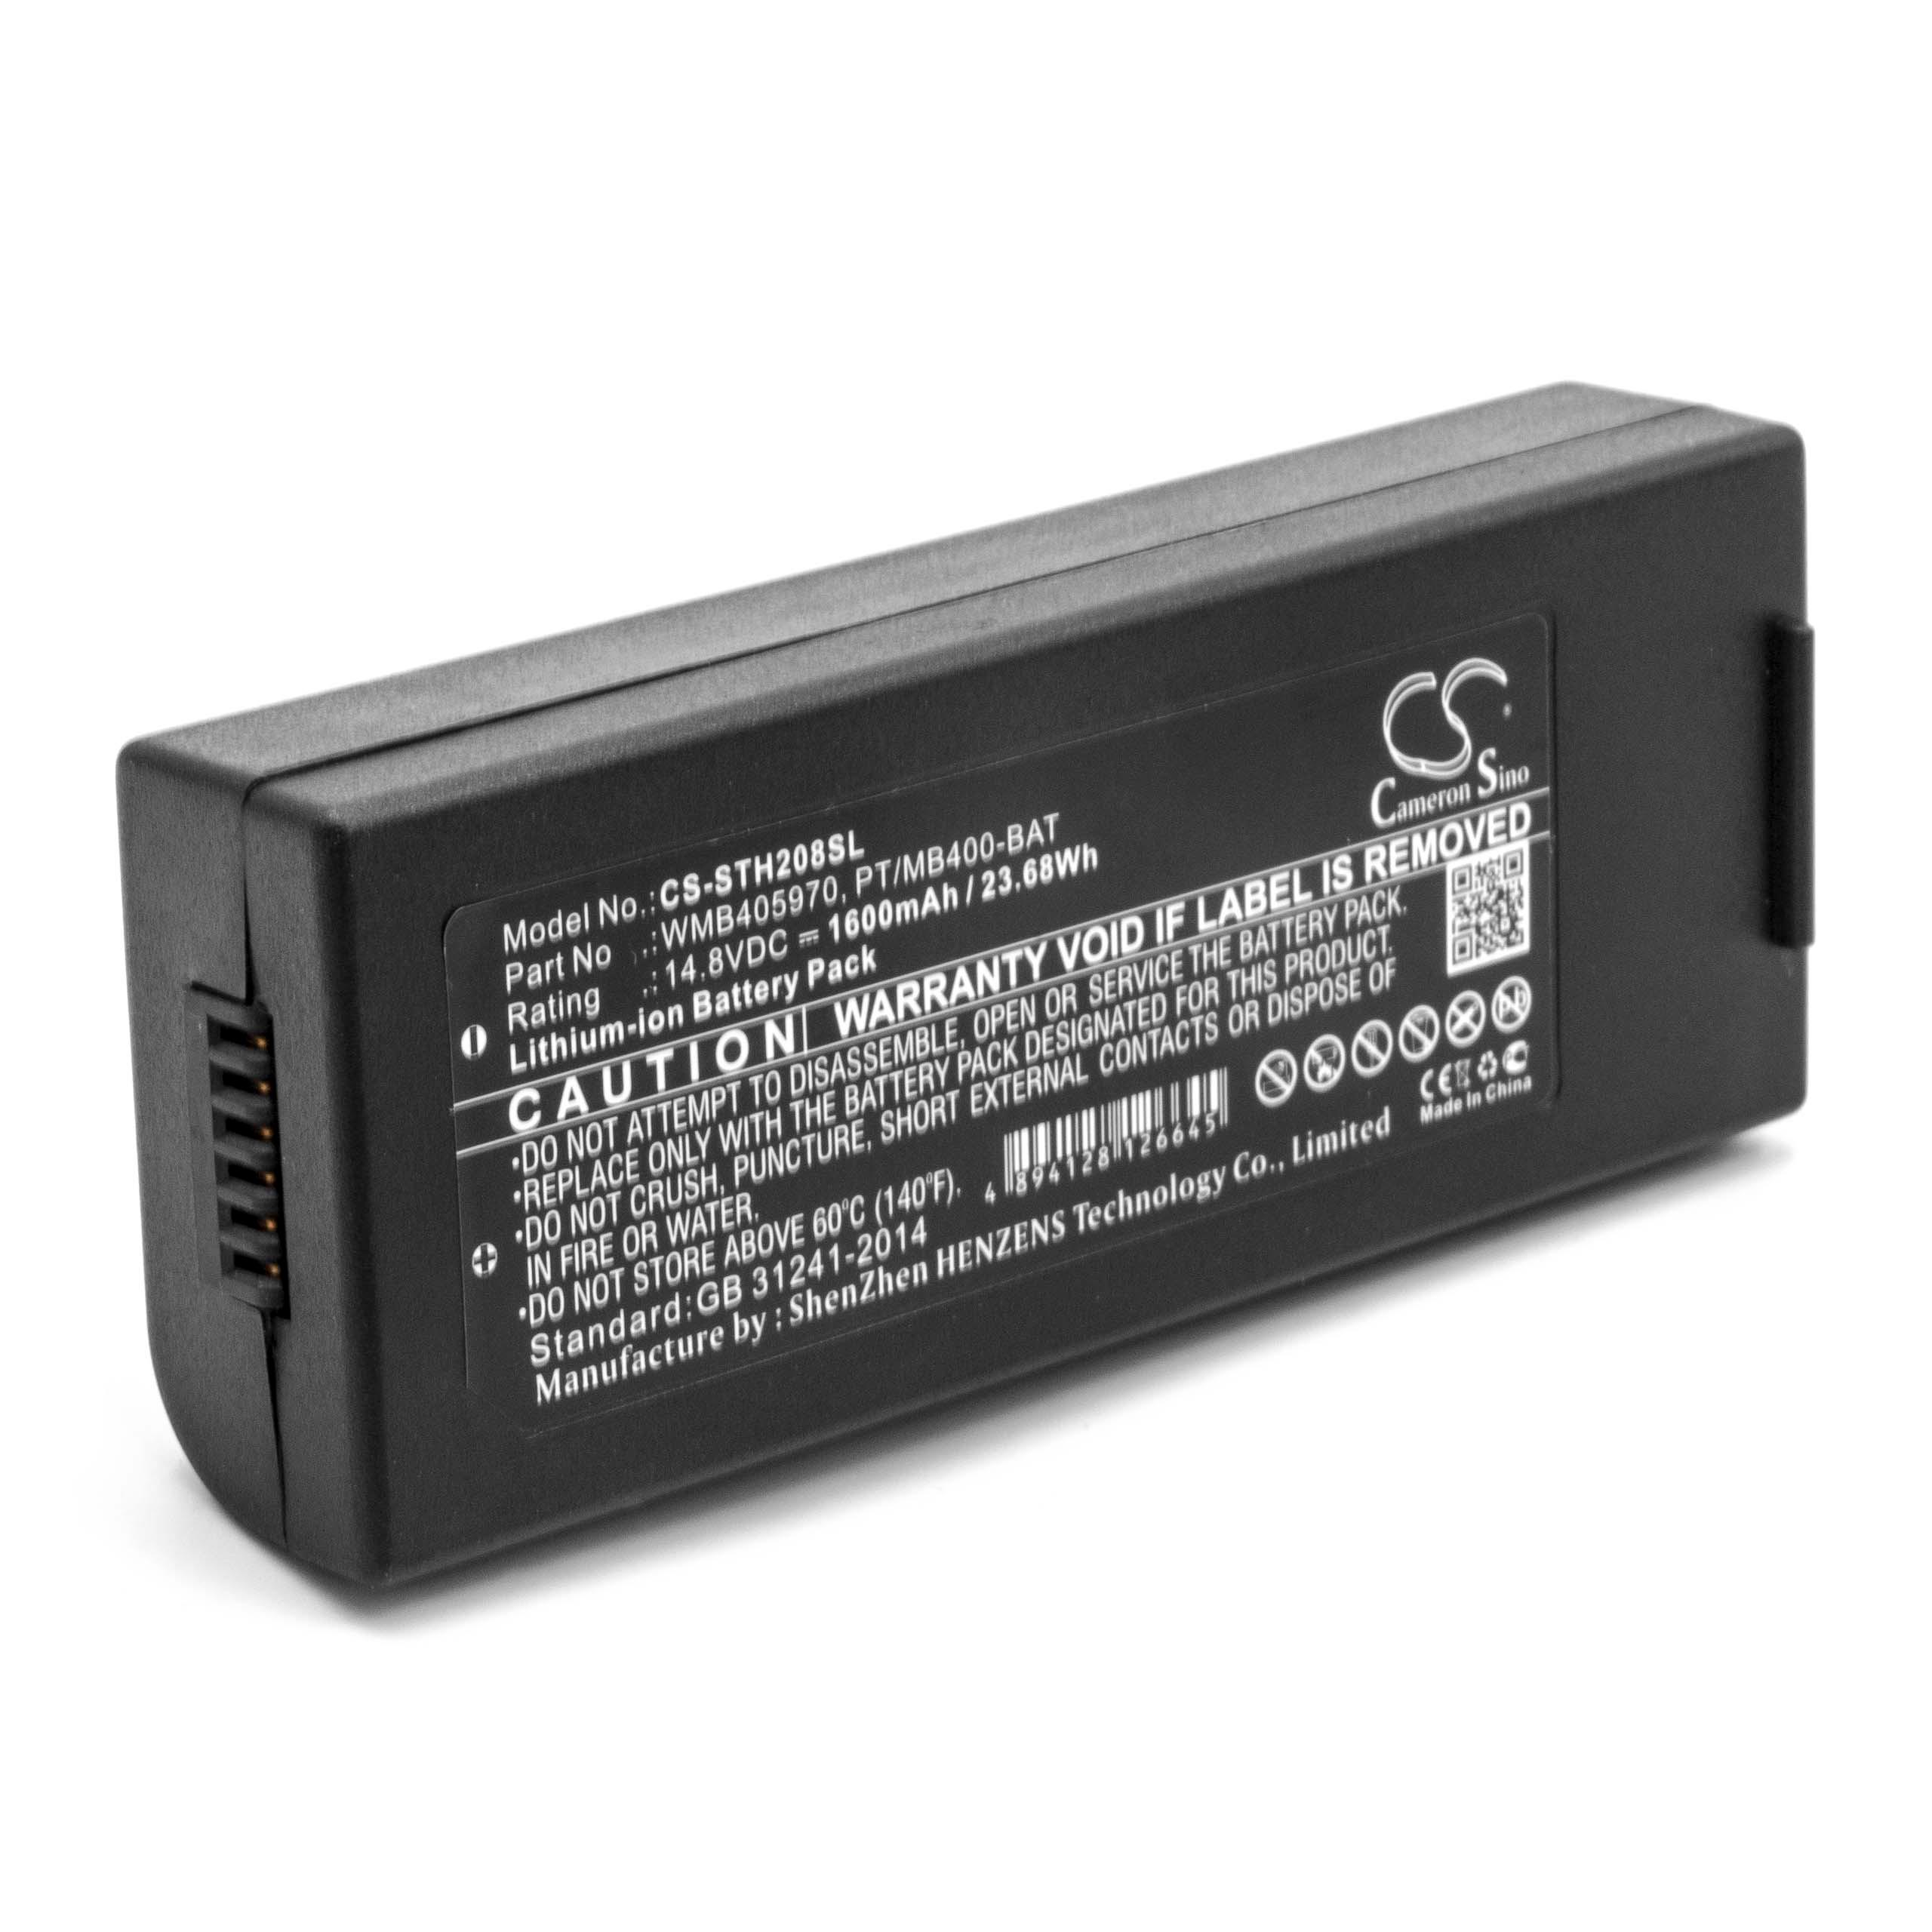 Batterie remplace WMB405970, PT/MB400-BAT pour imprimante - 1600mAh 14,8V Li-ion